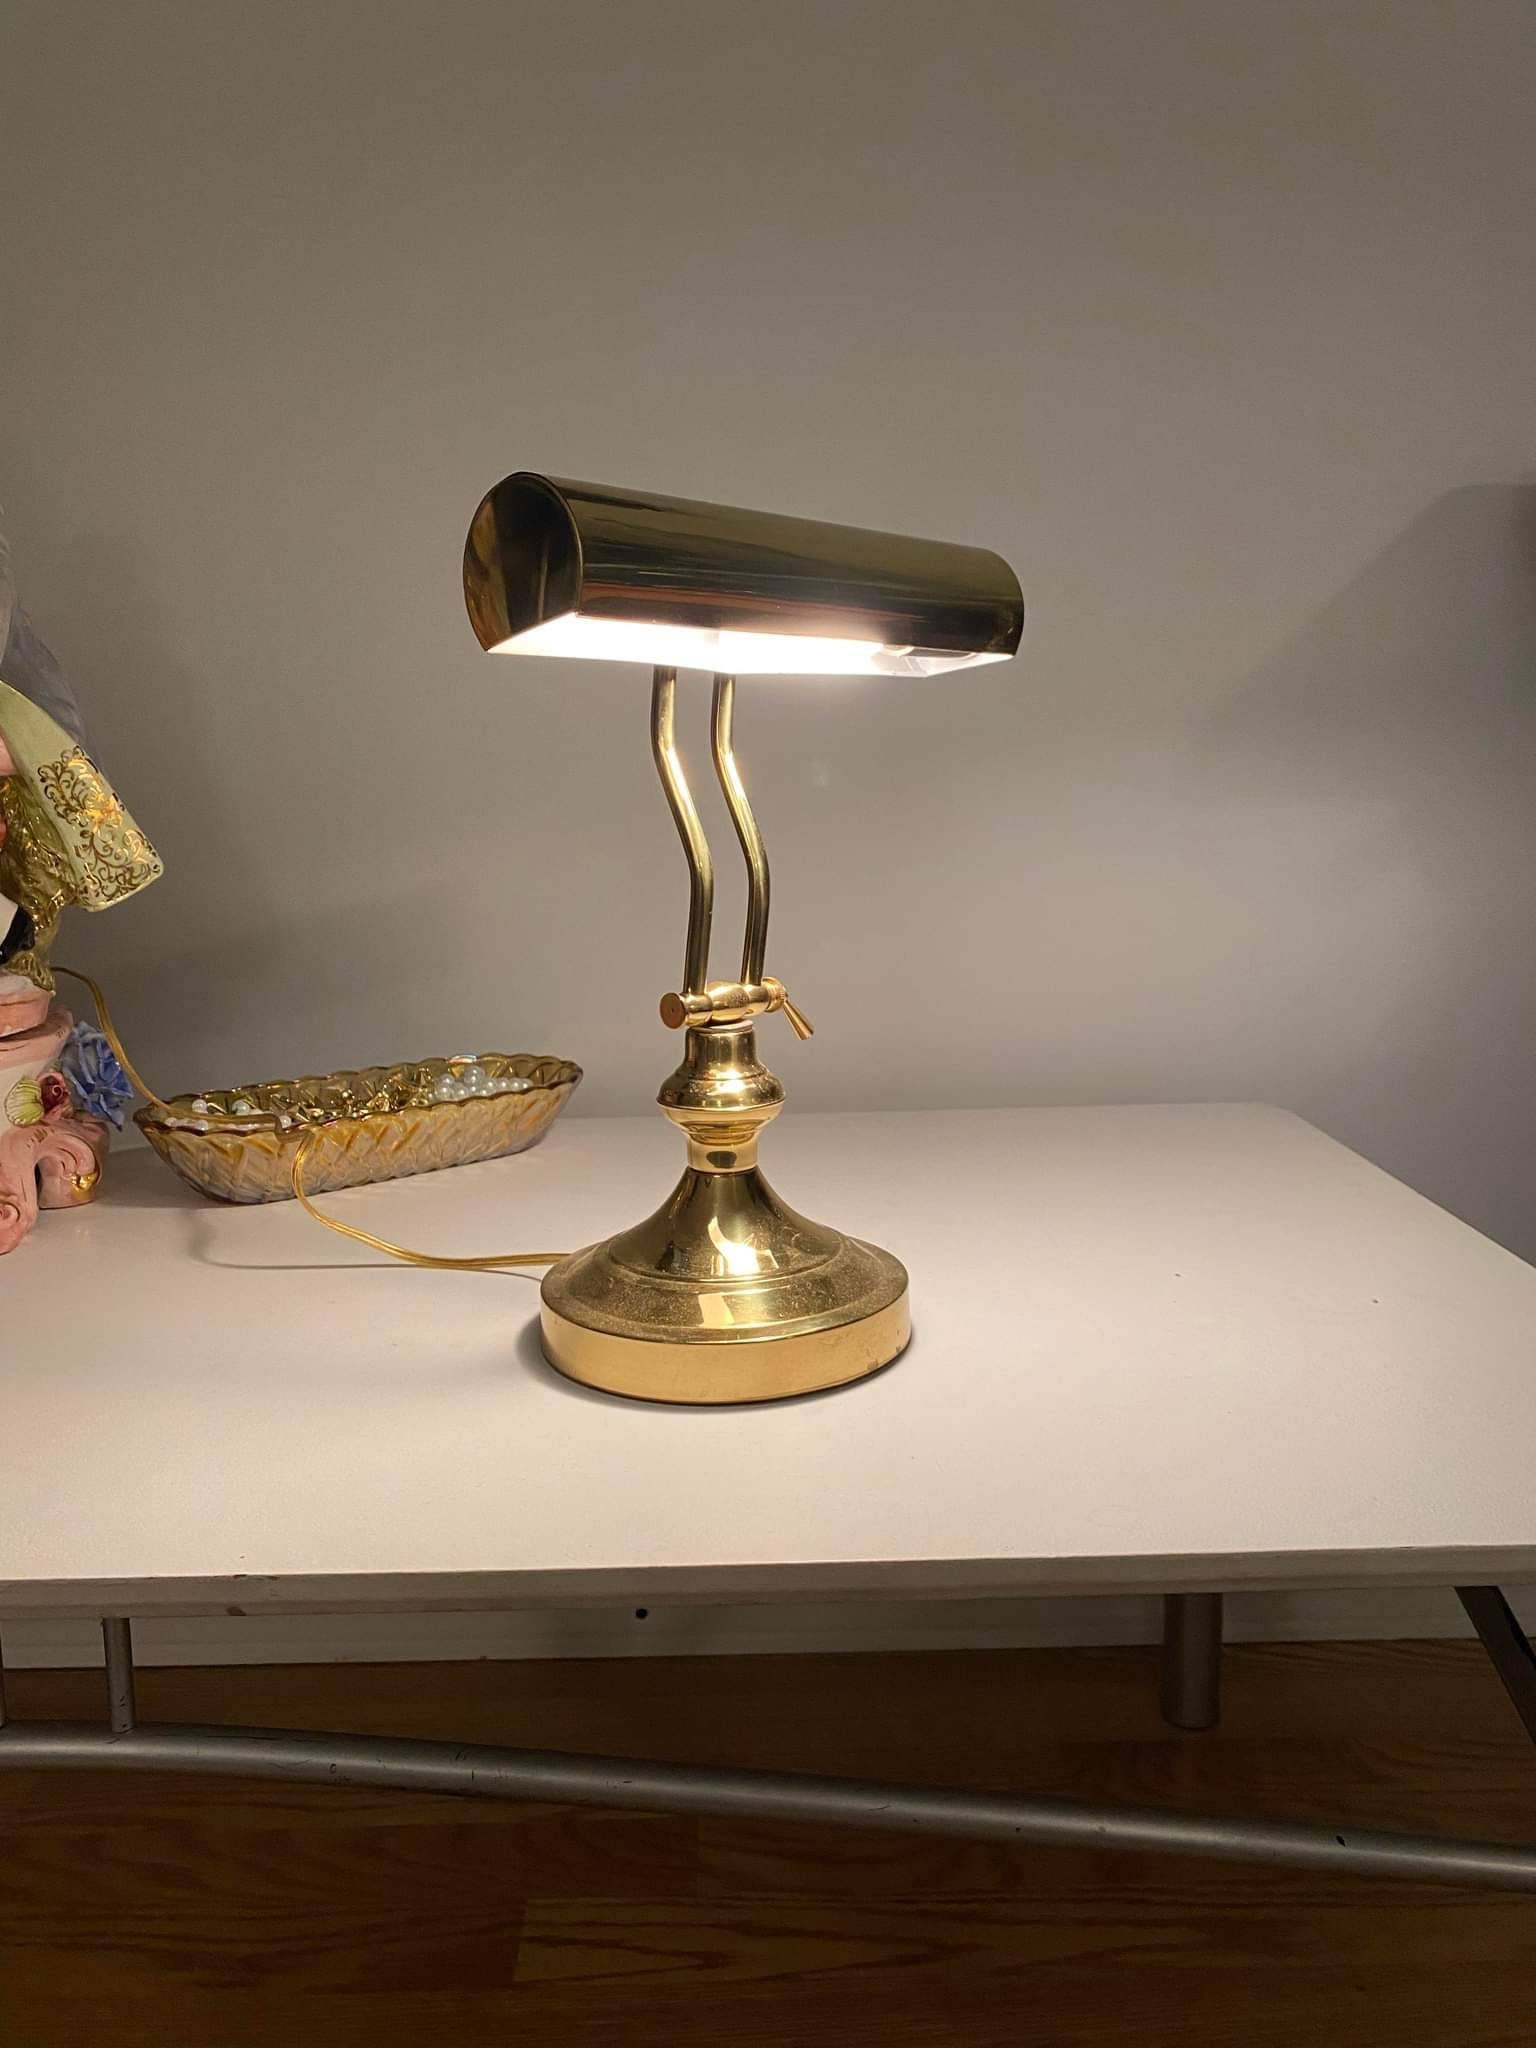 3 Antiqued Brass Desk-top Magnifier on Solid Wood Base Antique Vintage  Style 